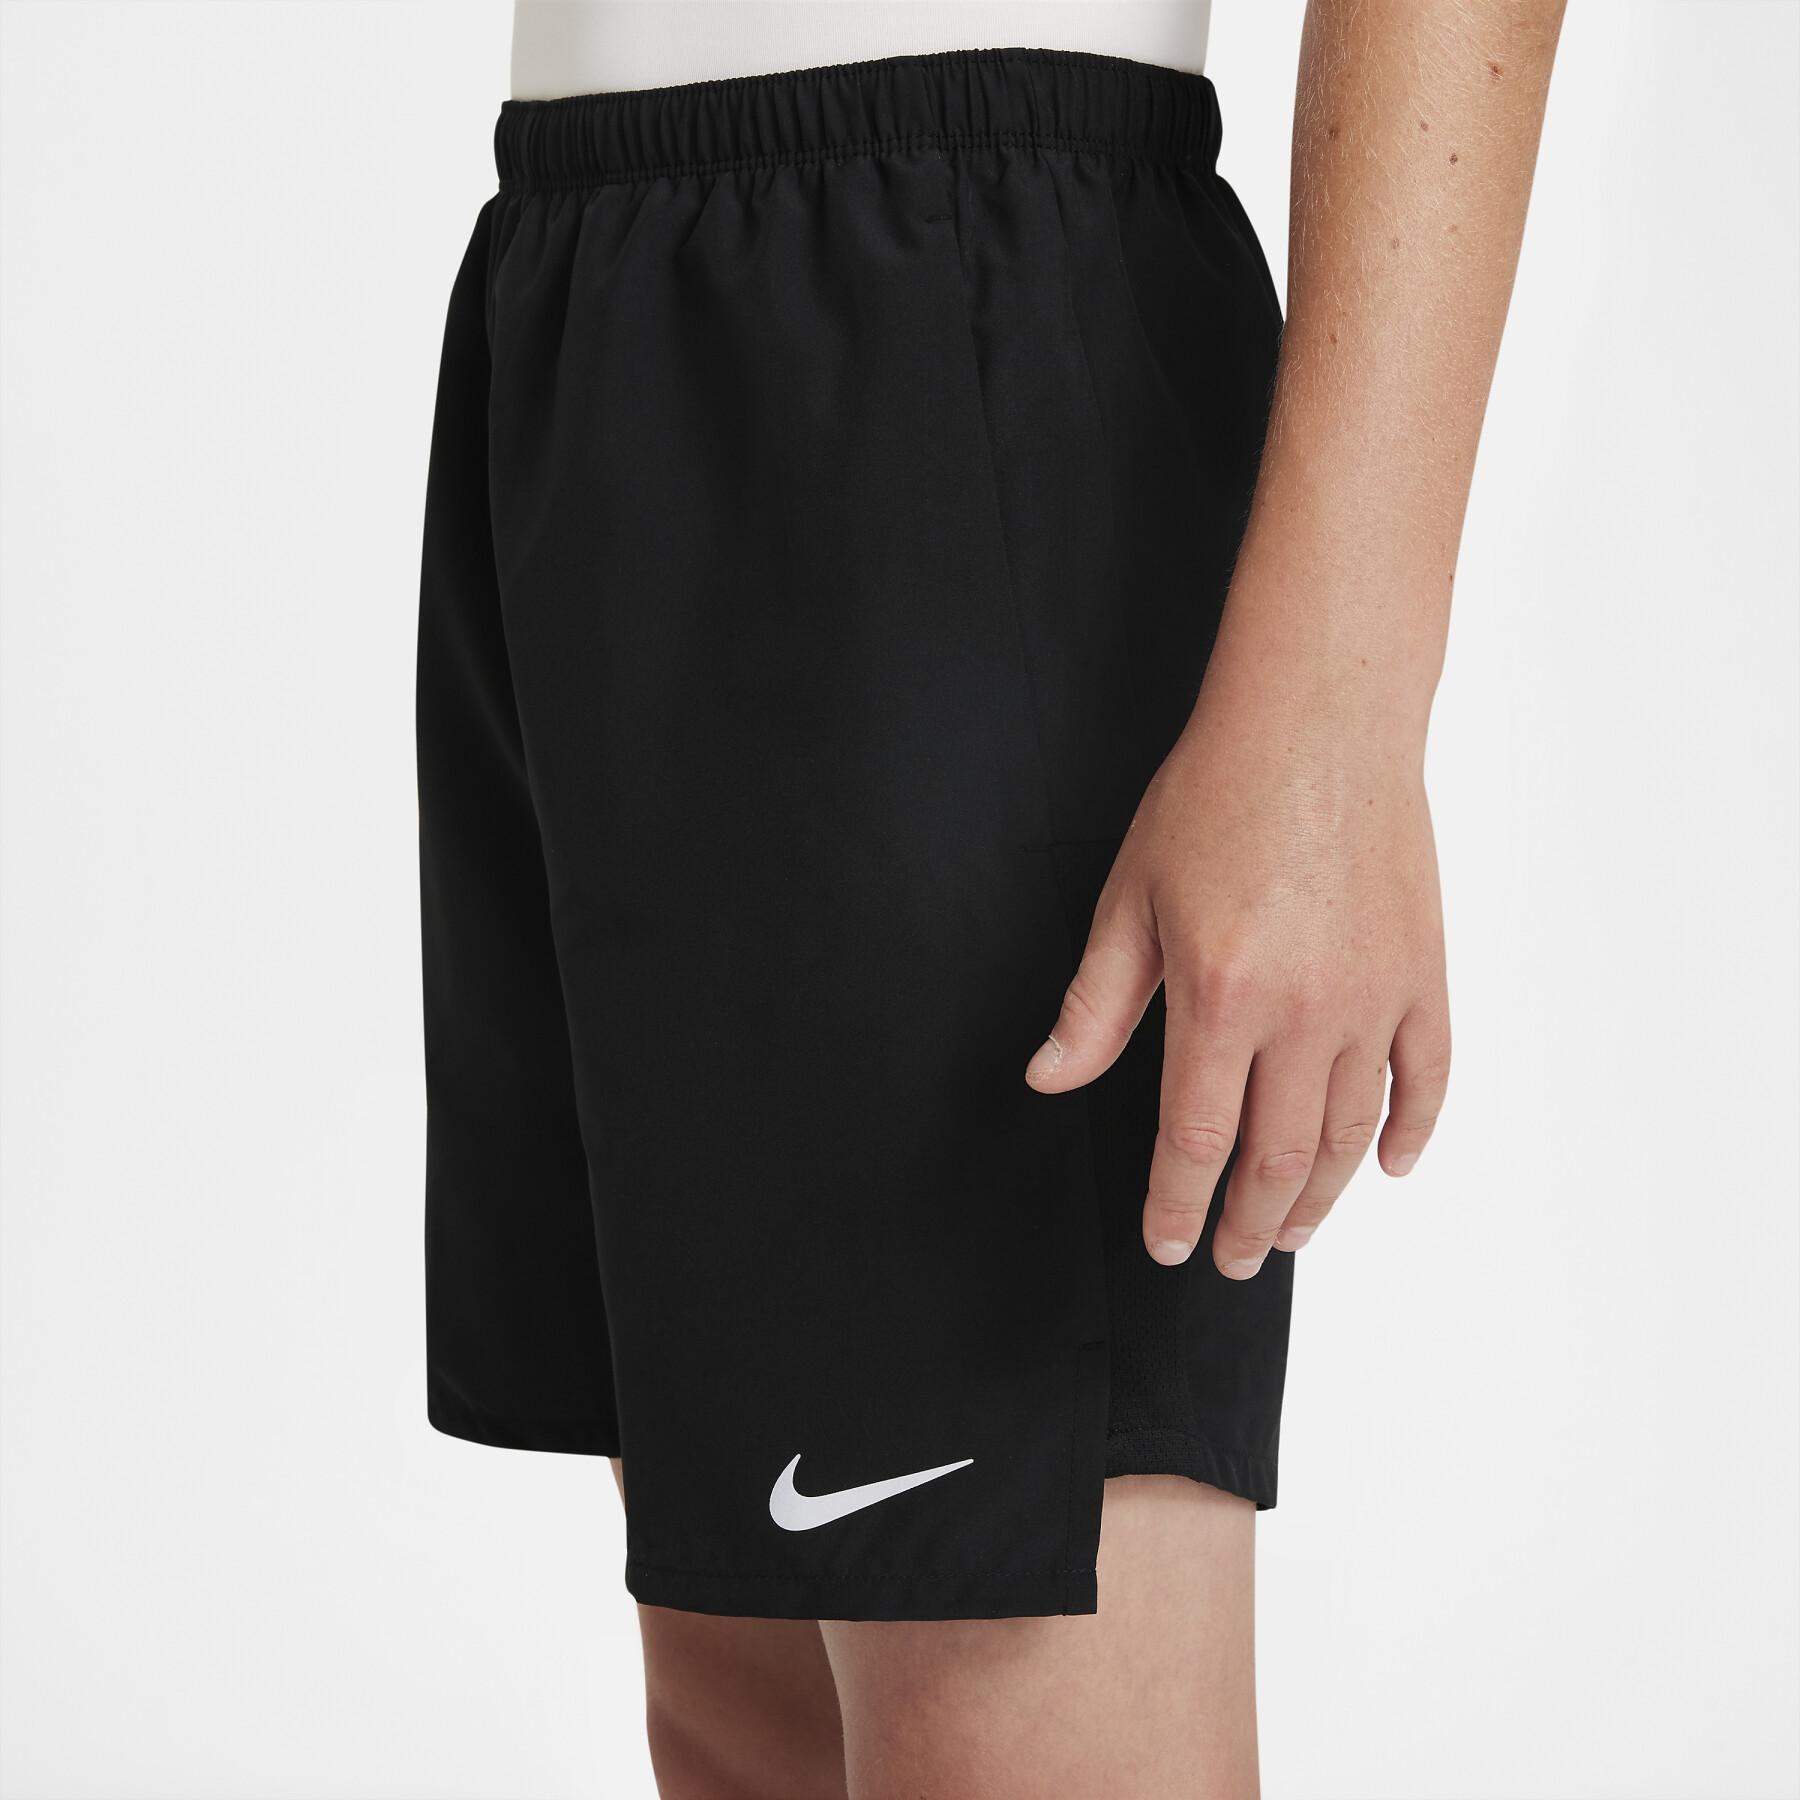 Pantaloncini per bambini Nike Challenger